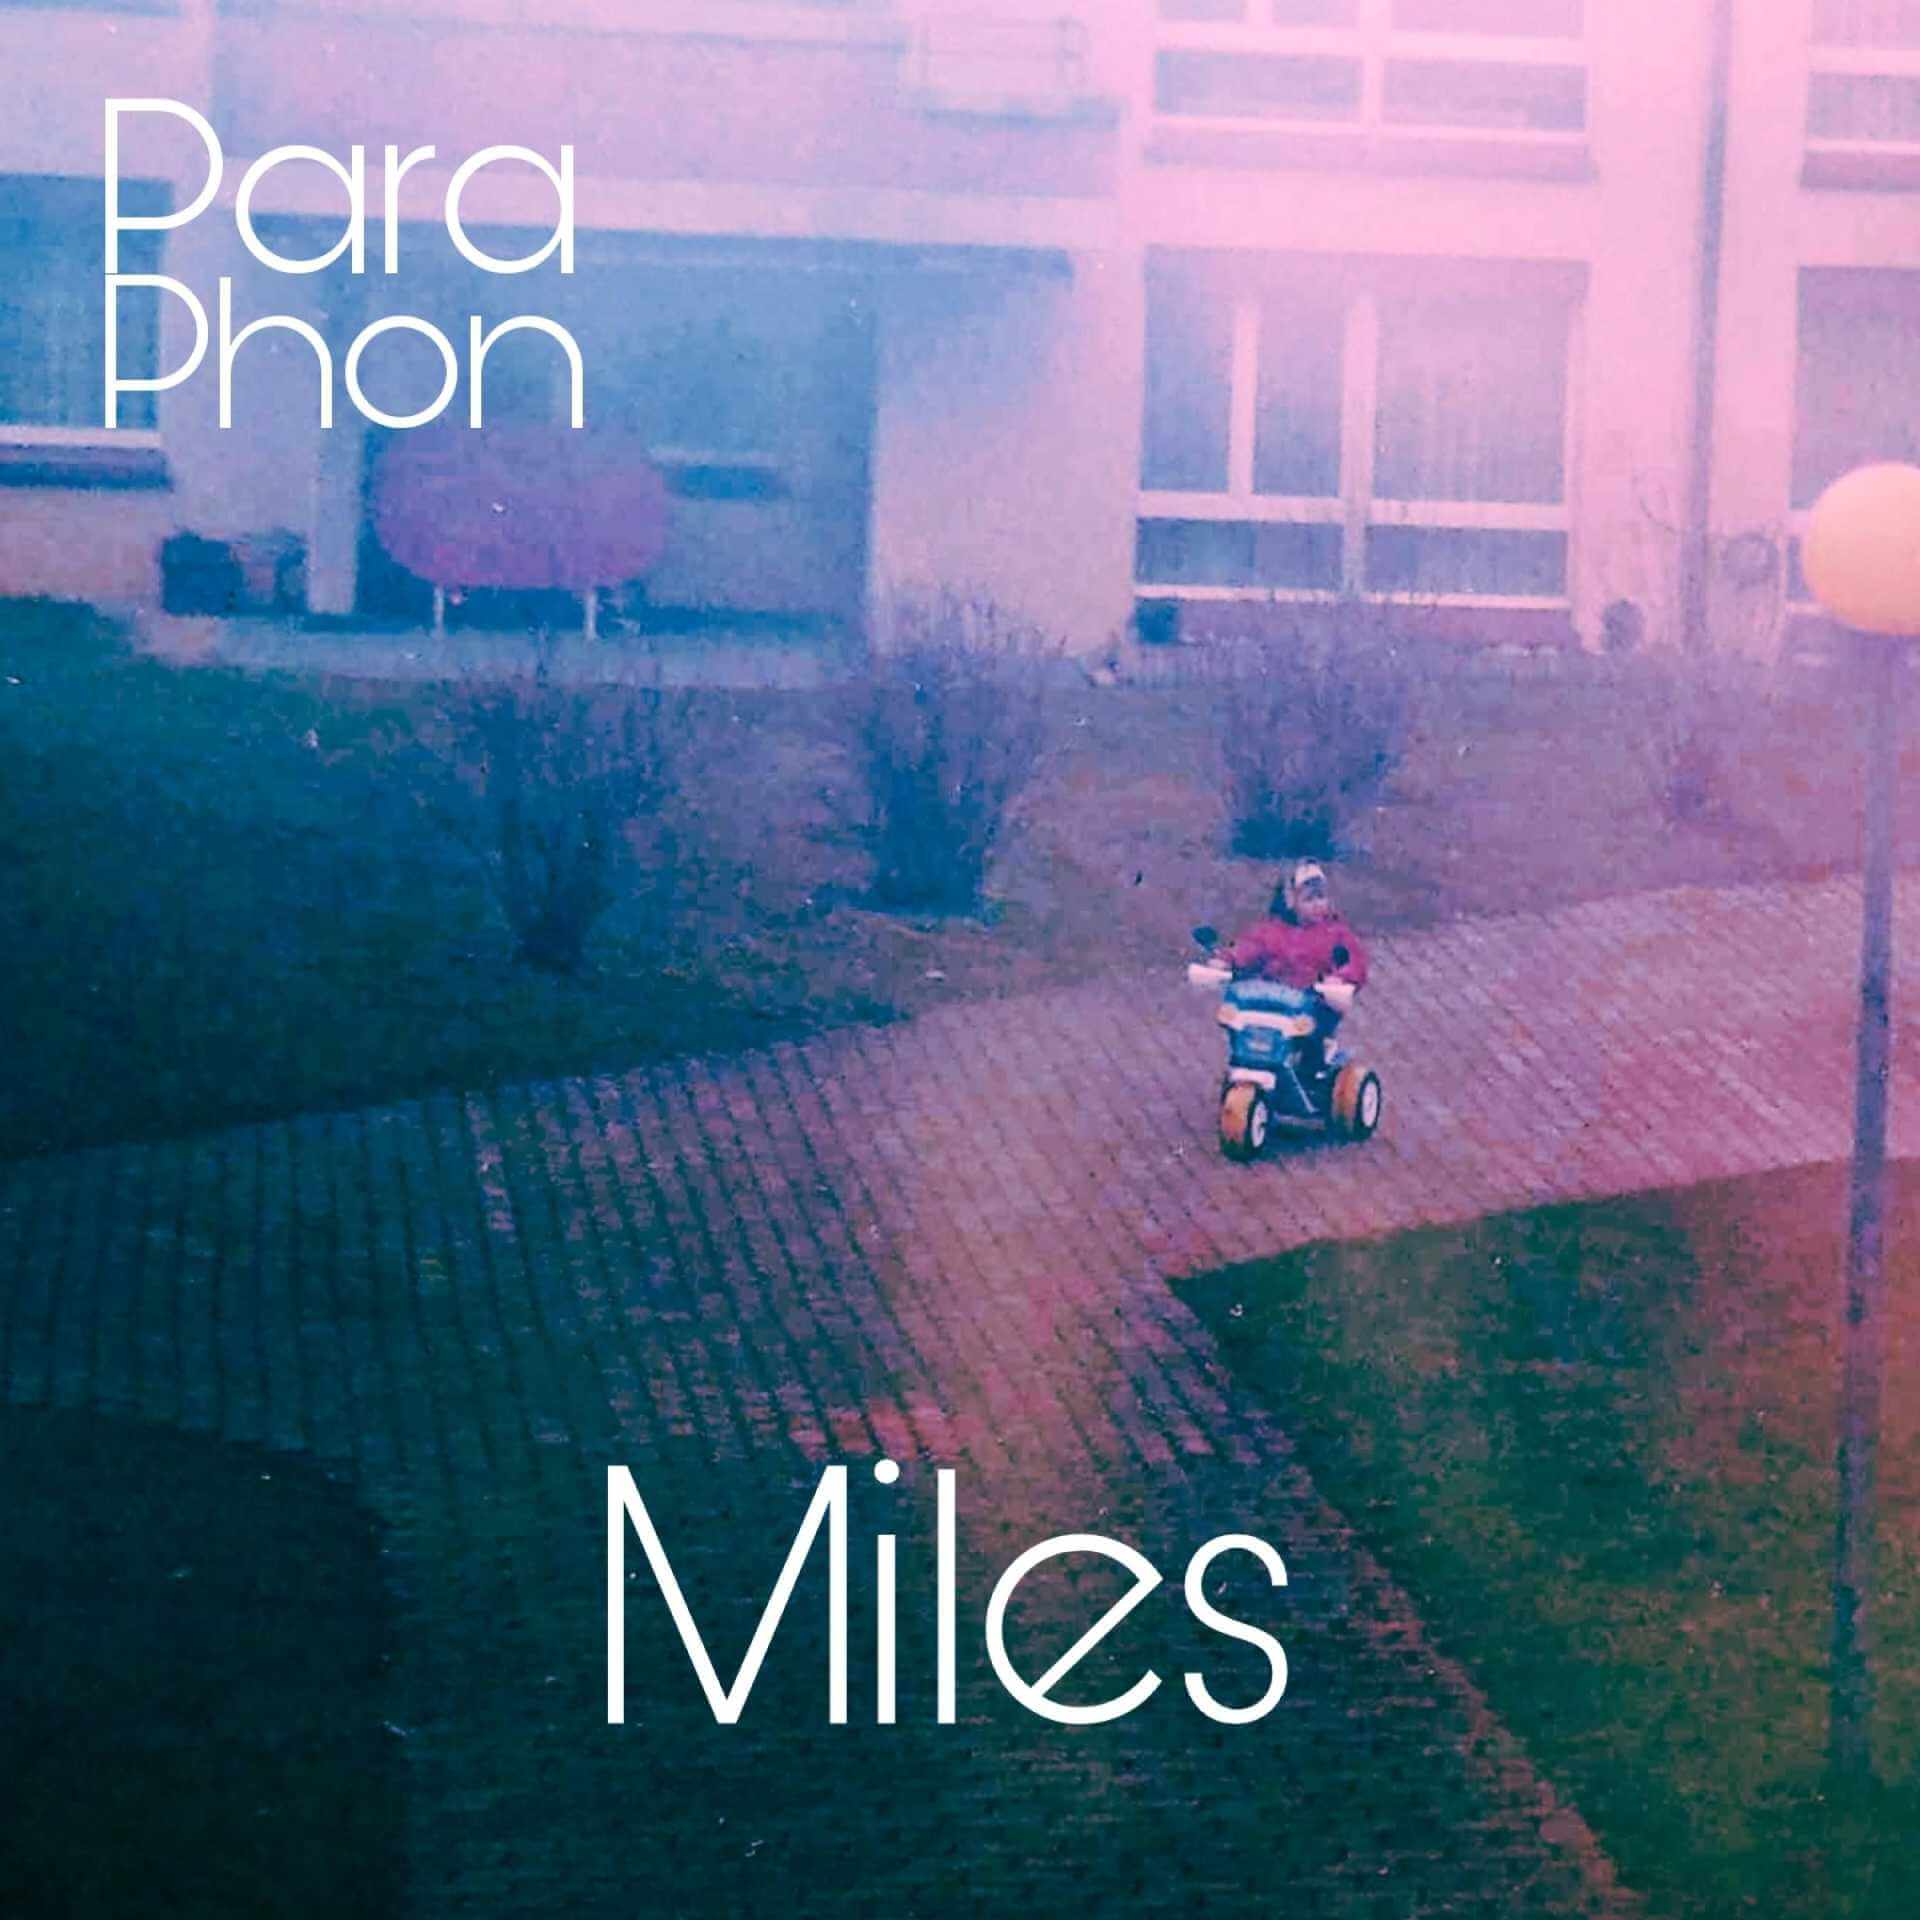 paraphon miles